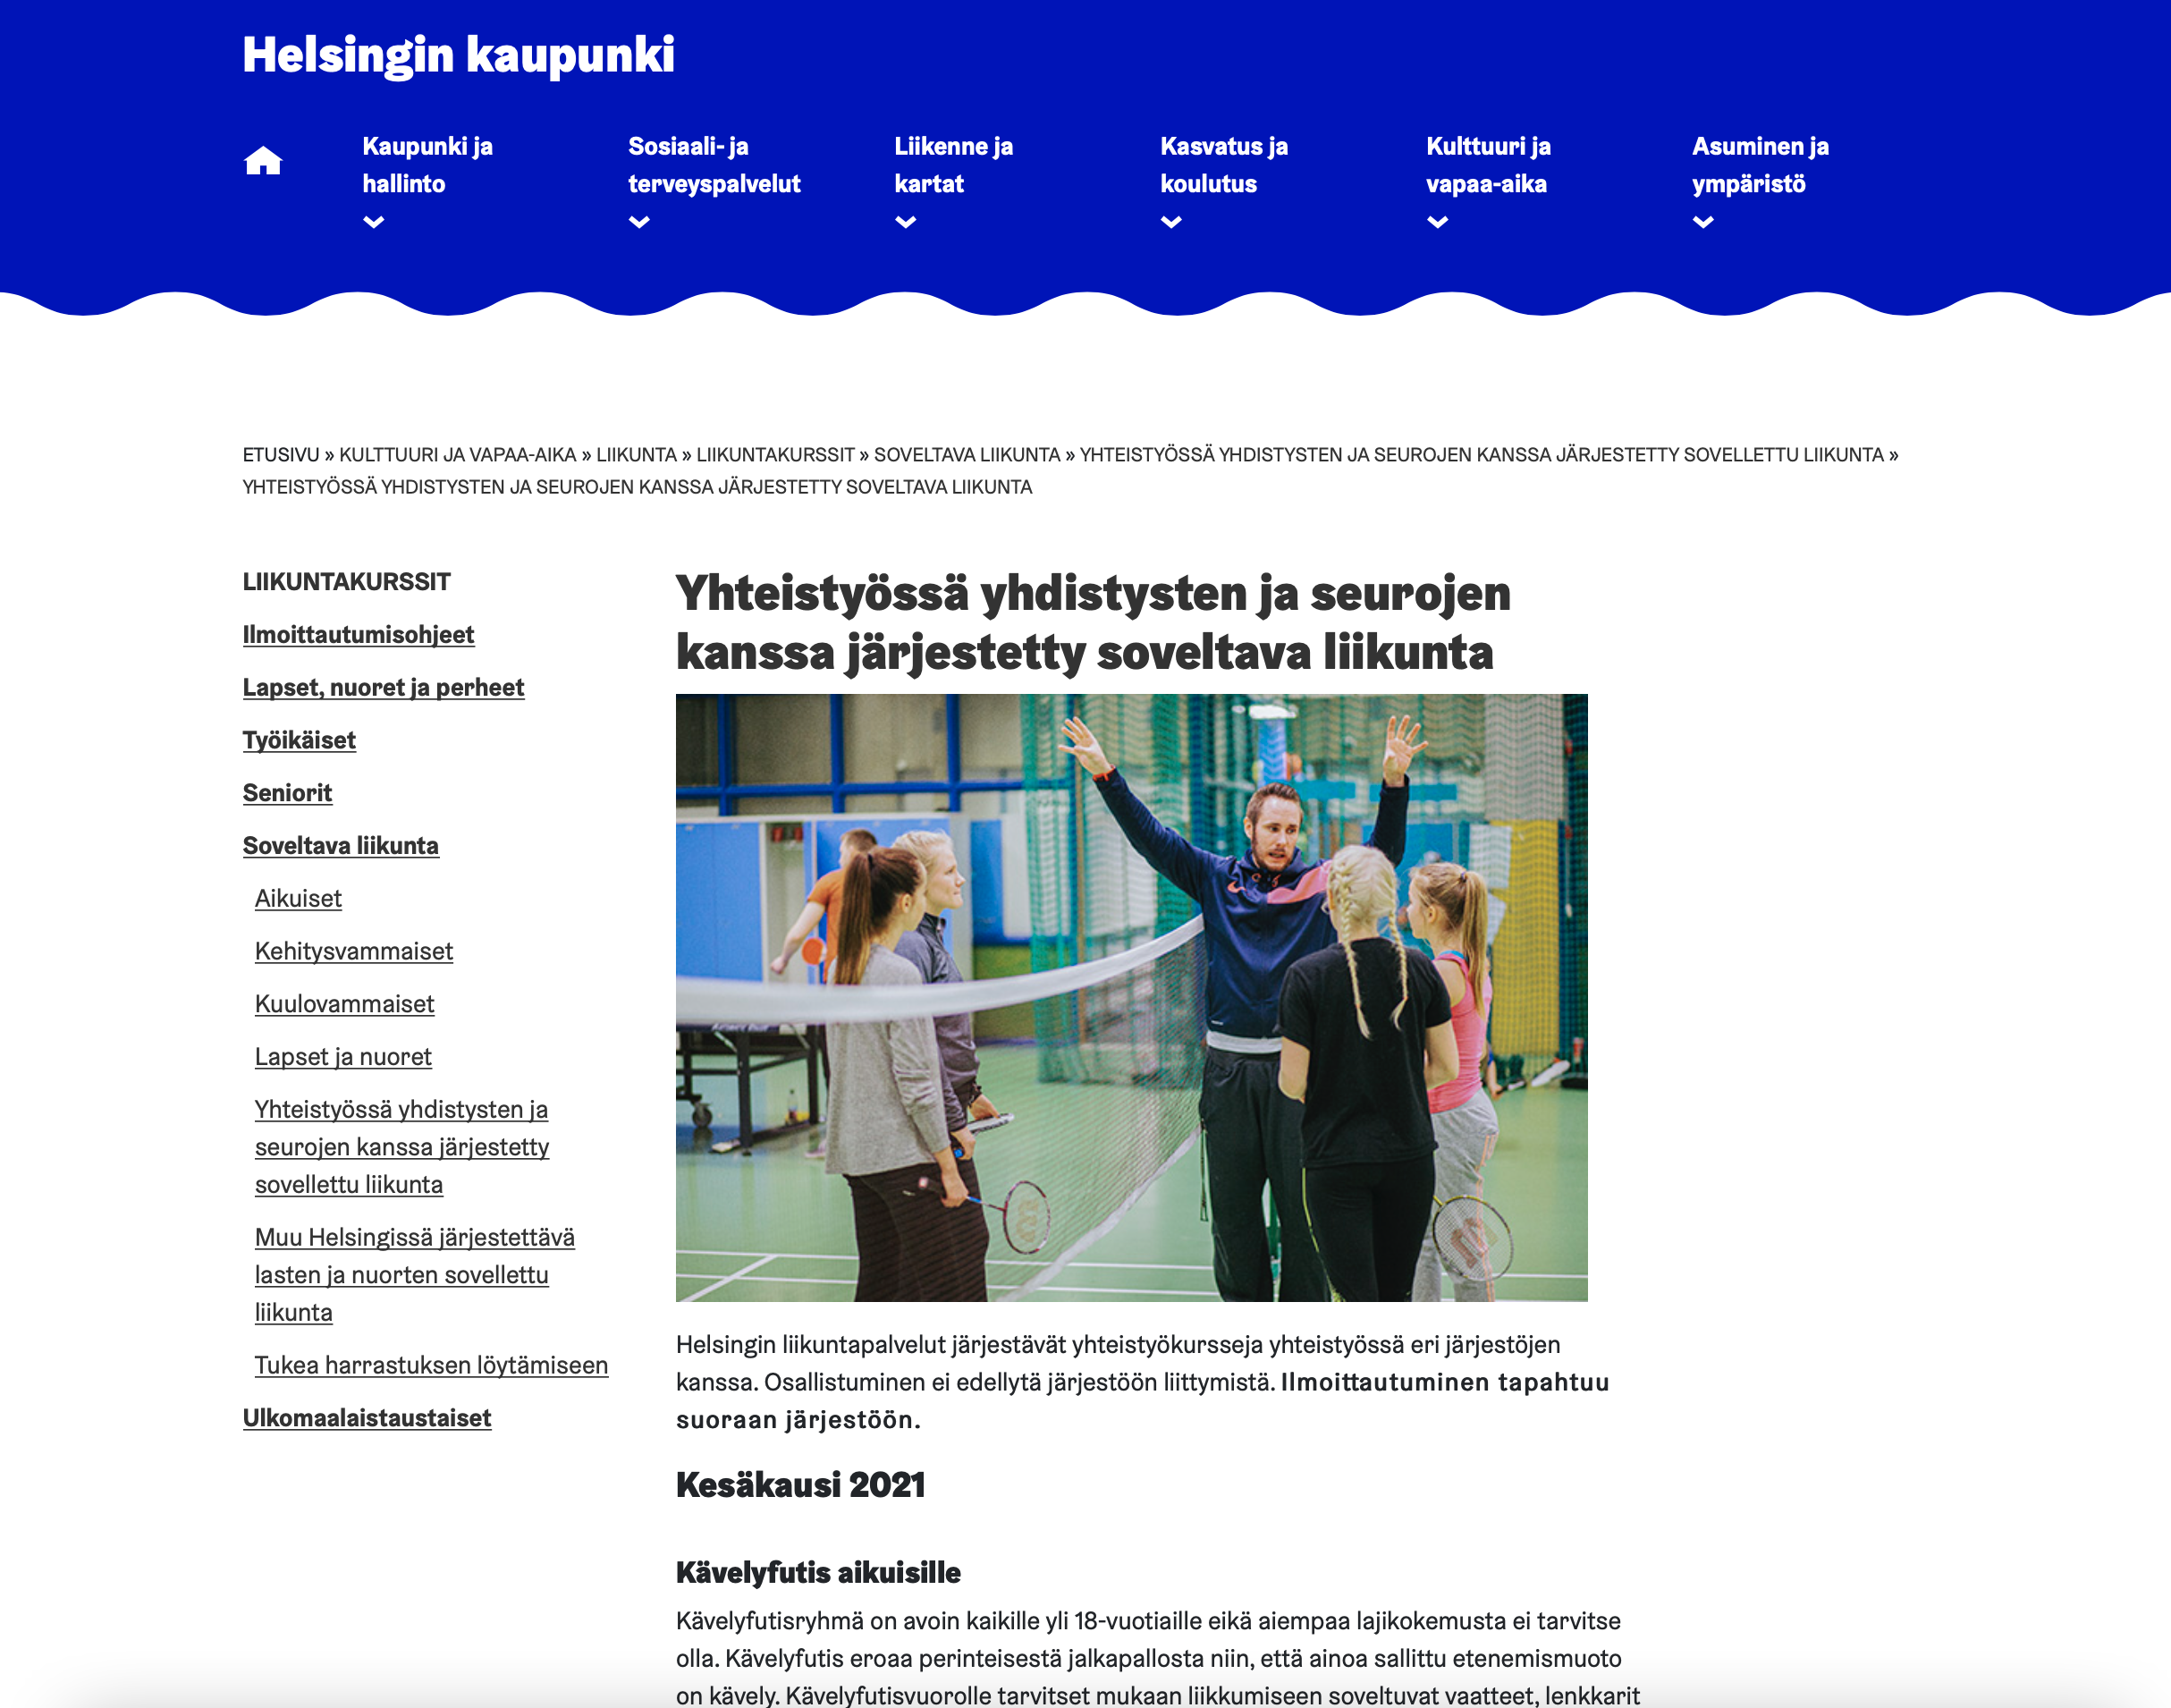 Ruutukaappaus Helsingin kaupungin nettisivuilta koskien liikuntaa